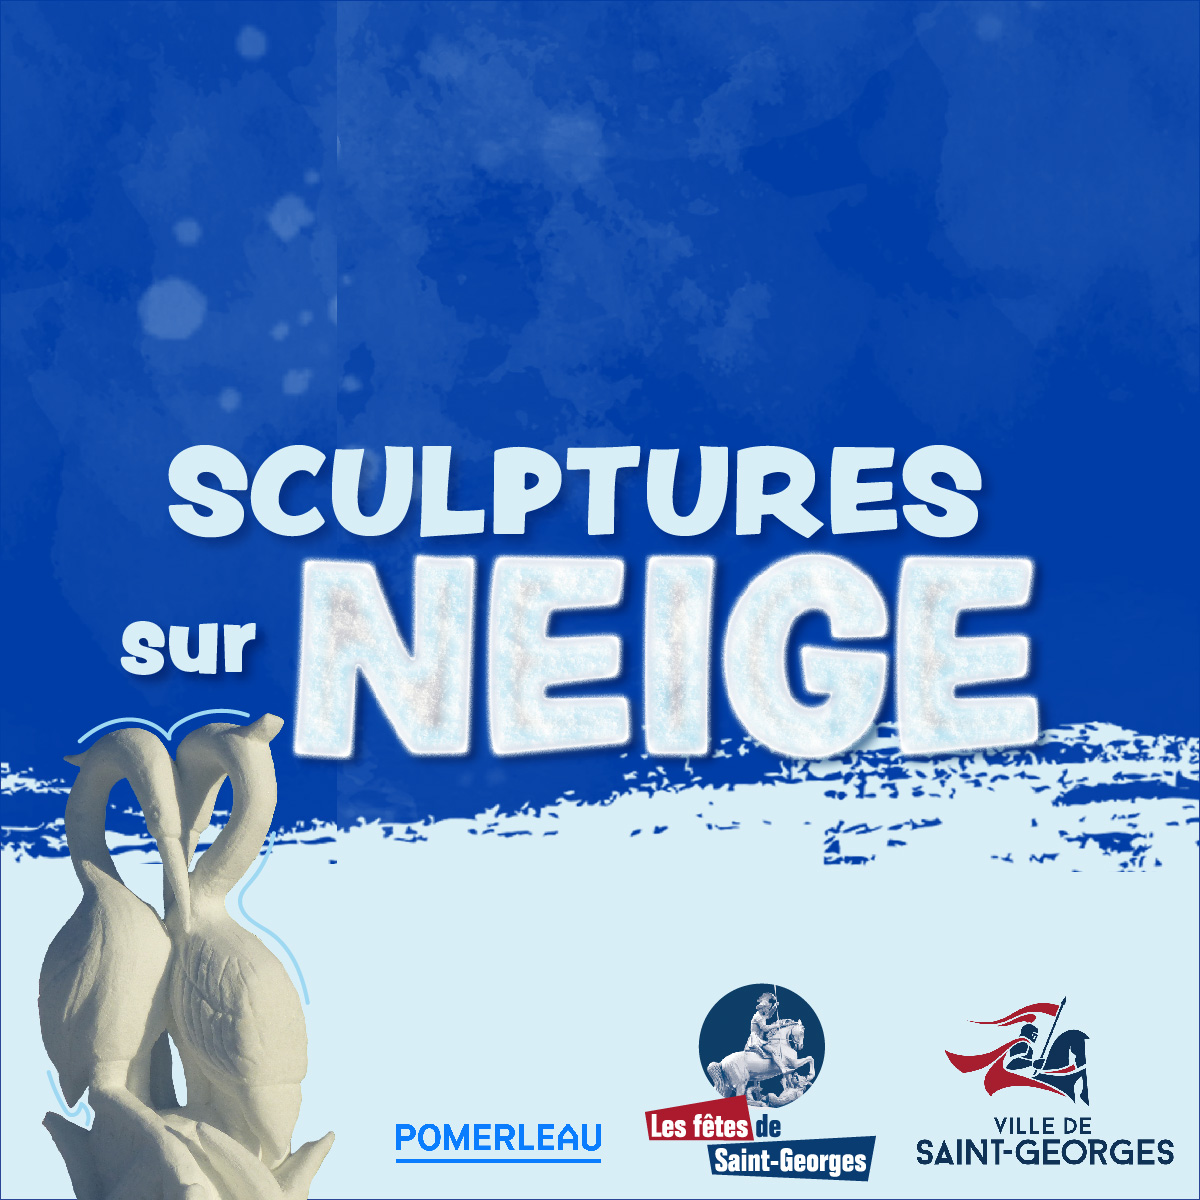 Le concours de sculptures sur neige aura lieu du 3 au 5 février 2023 au parc Pomerleau